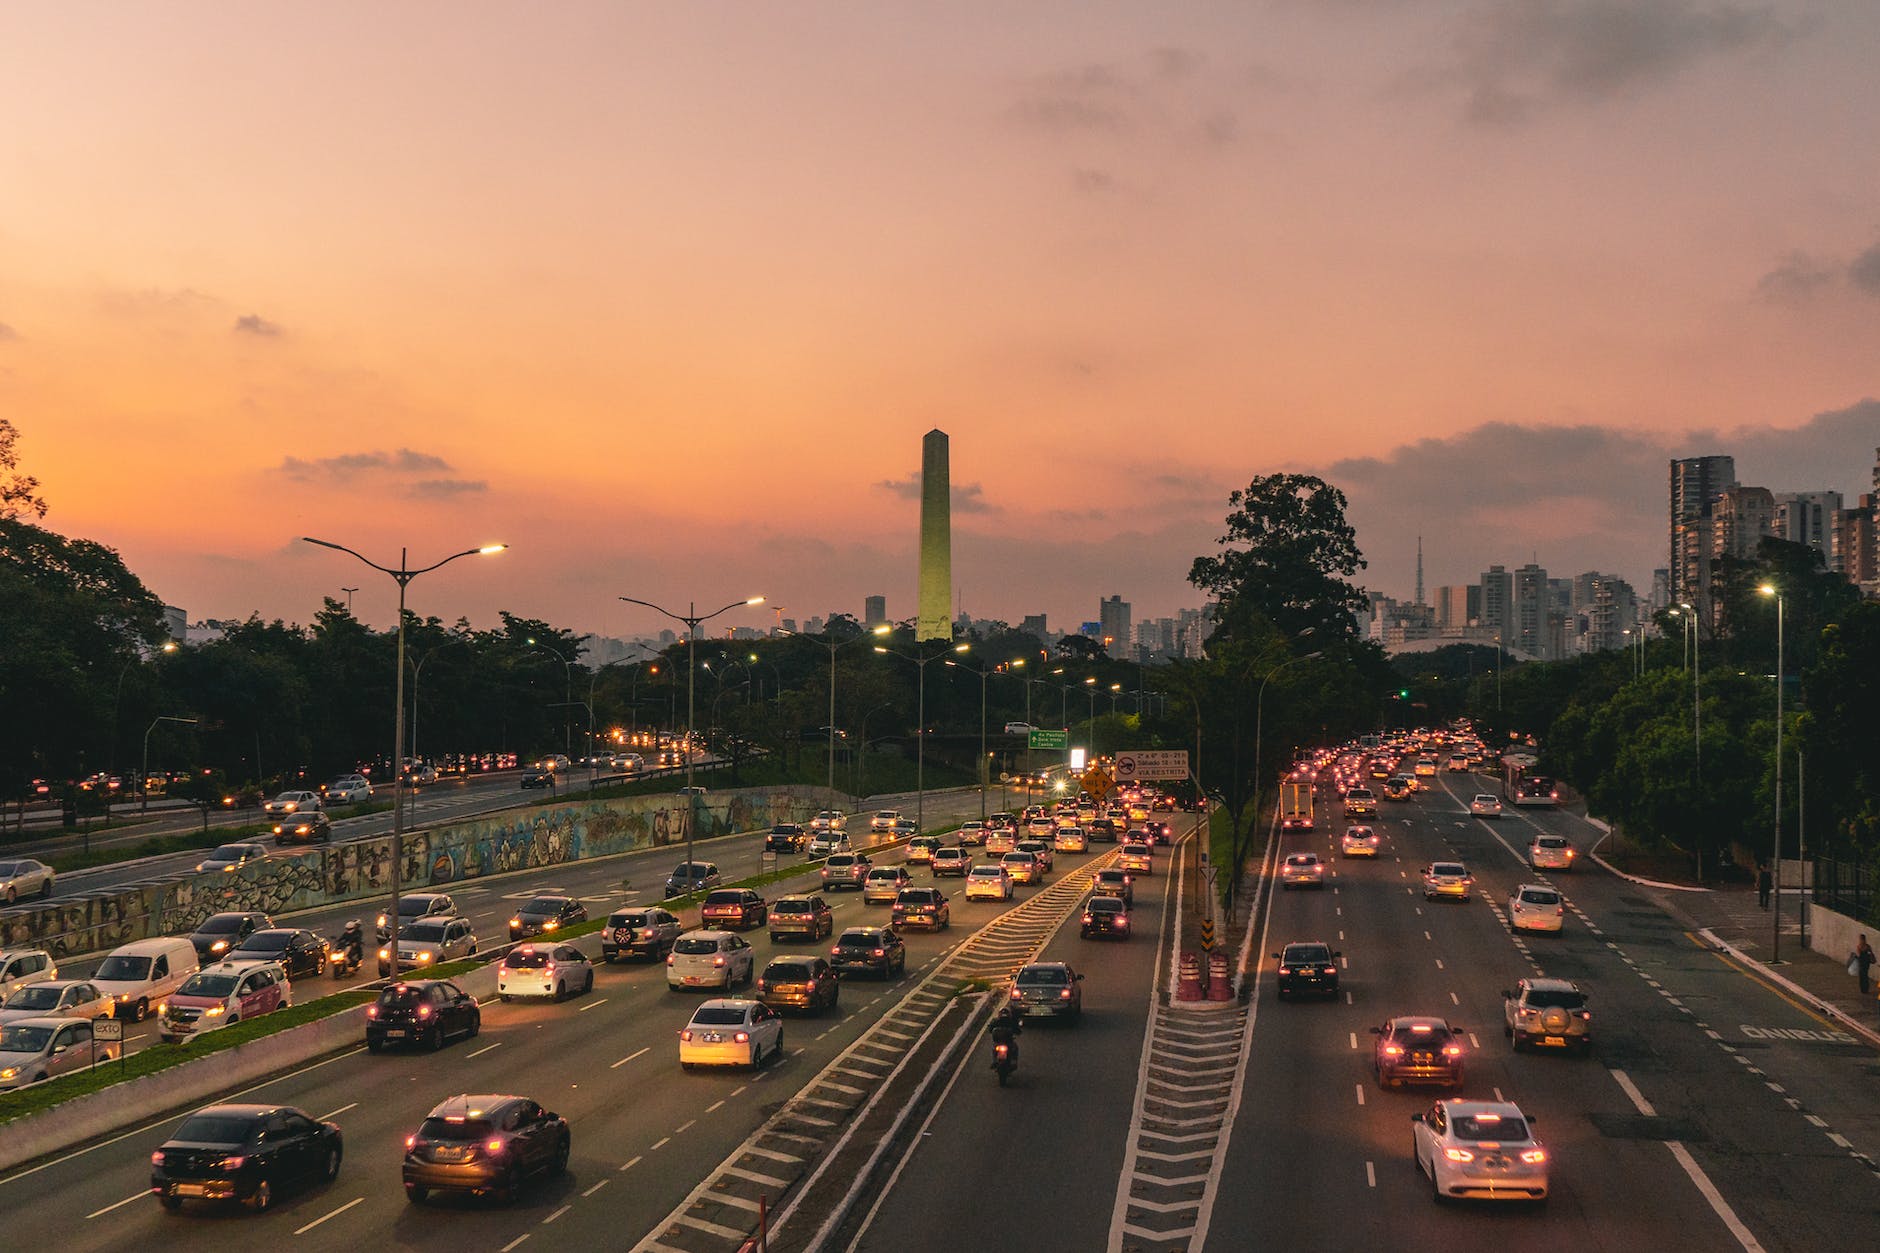 traffic jam in highways during dusk